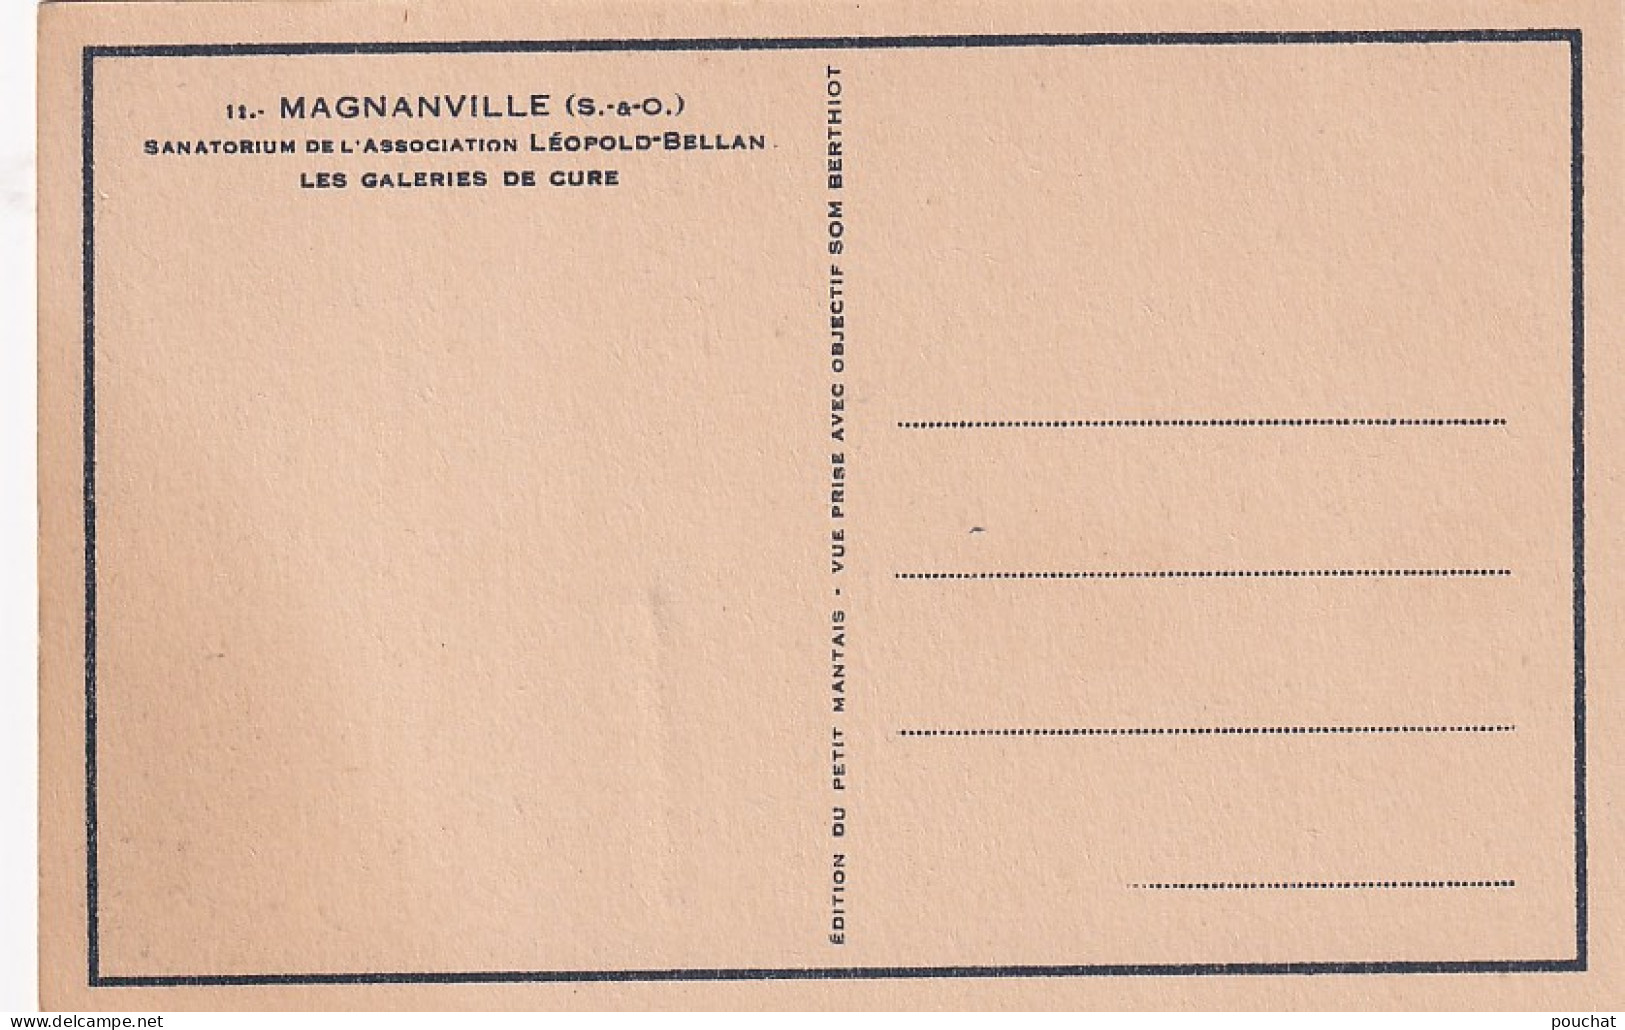 Z++ nw-(78) MAGNANVILLE - SANATORIUM DE L'ASSOC. L. BELLAN : COUR , AILE GAUCHE , PAVILLON WETMORE , GALERIES DE CURE 